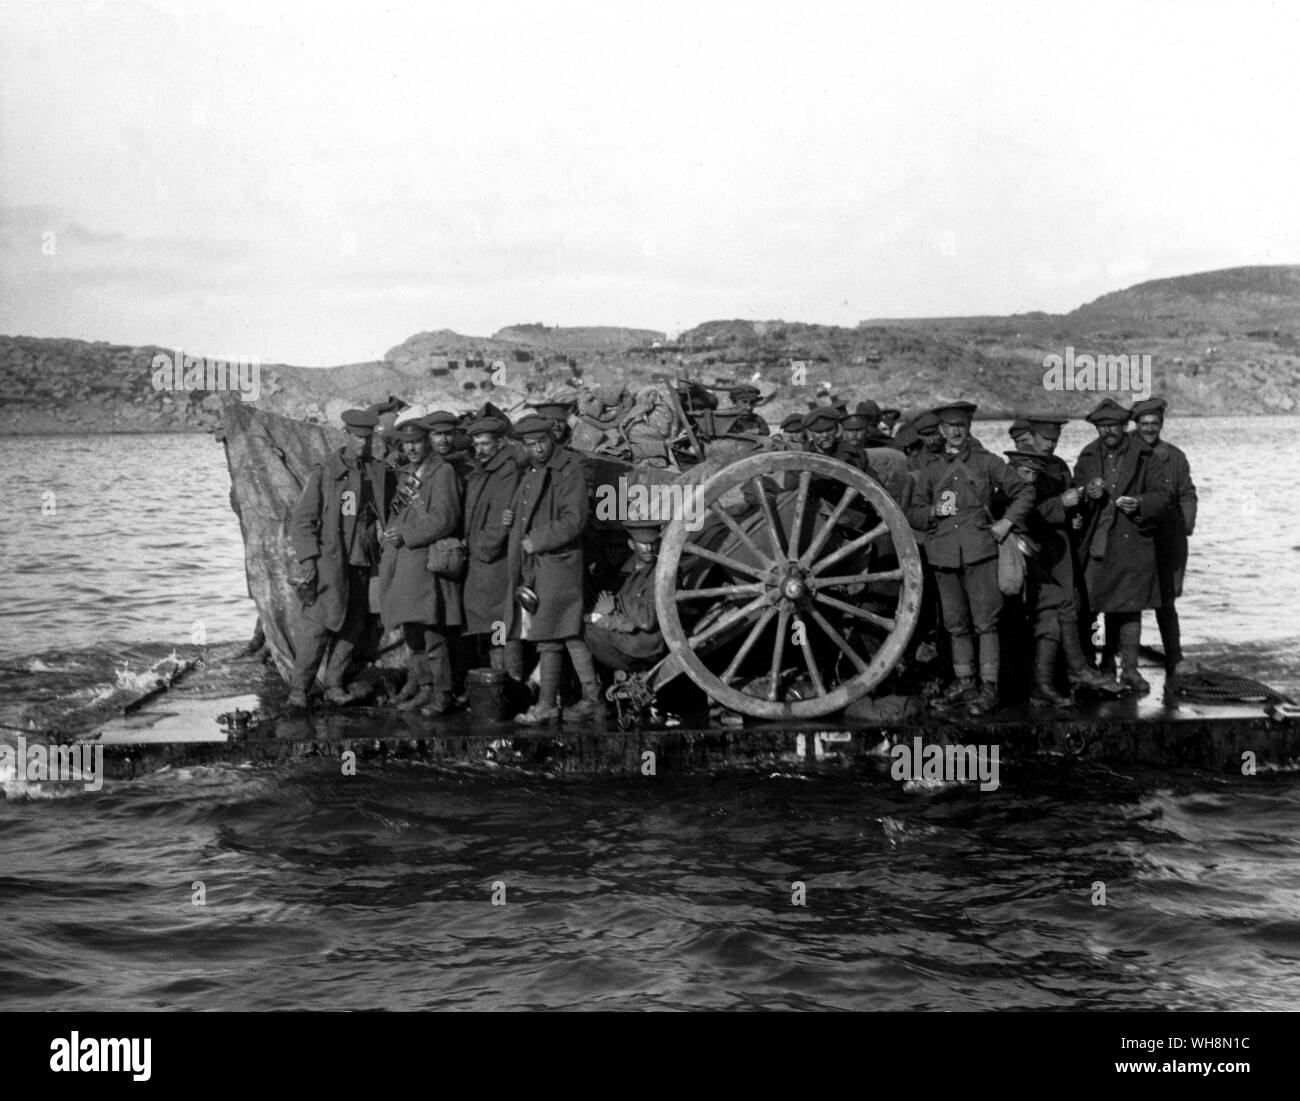 Novembre 1915, le Cabinet a décidé d'évacuer des soldats et les armes à feu montre Gallipoli étant évacués de Suvla par radeau le 19 décembre 1915 Banque D'Images